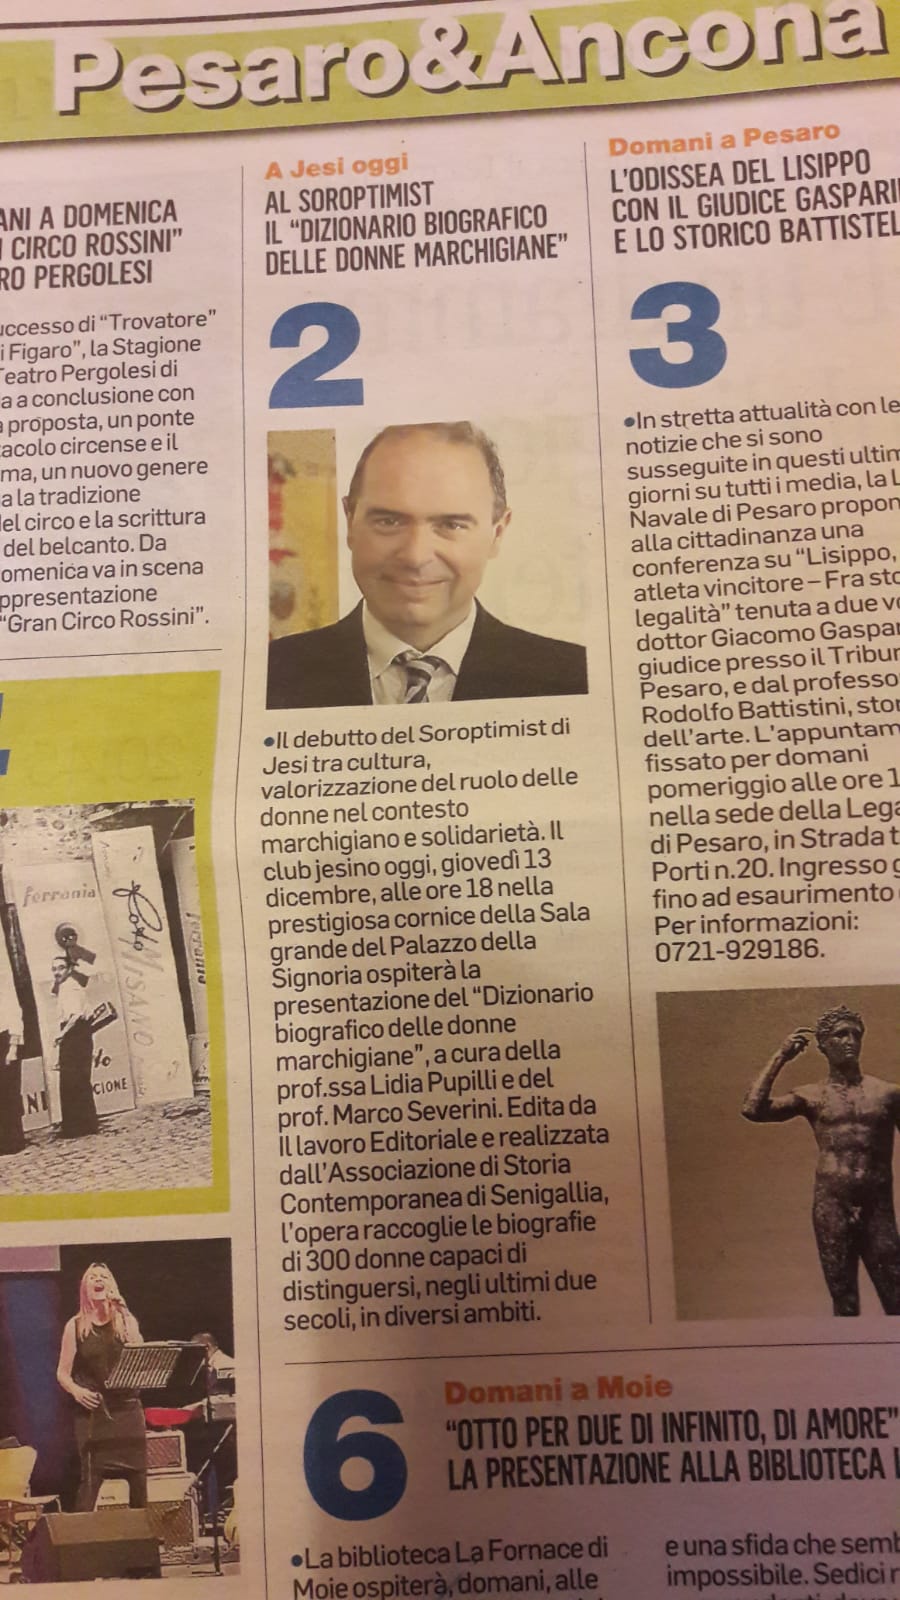 Articolo su Corriere Adriatico